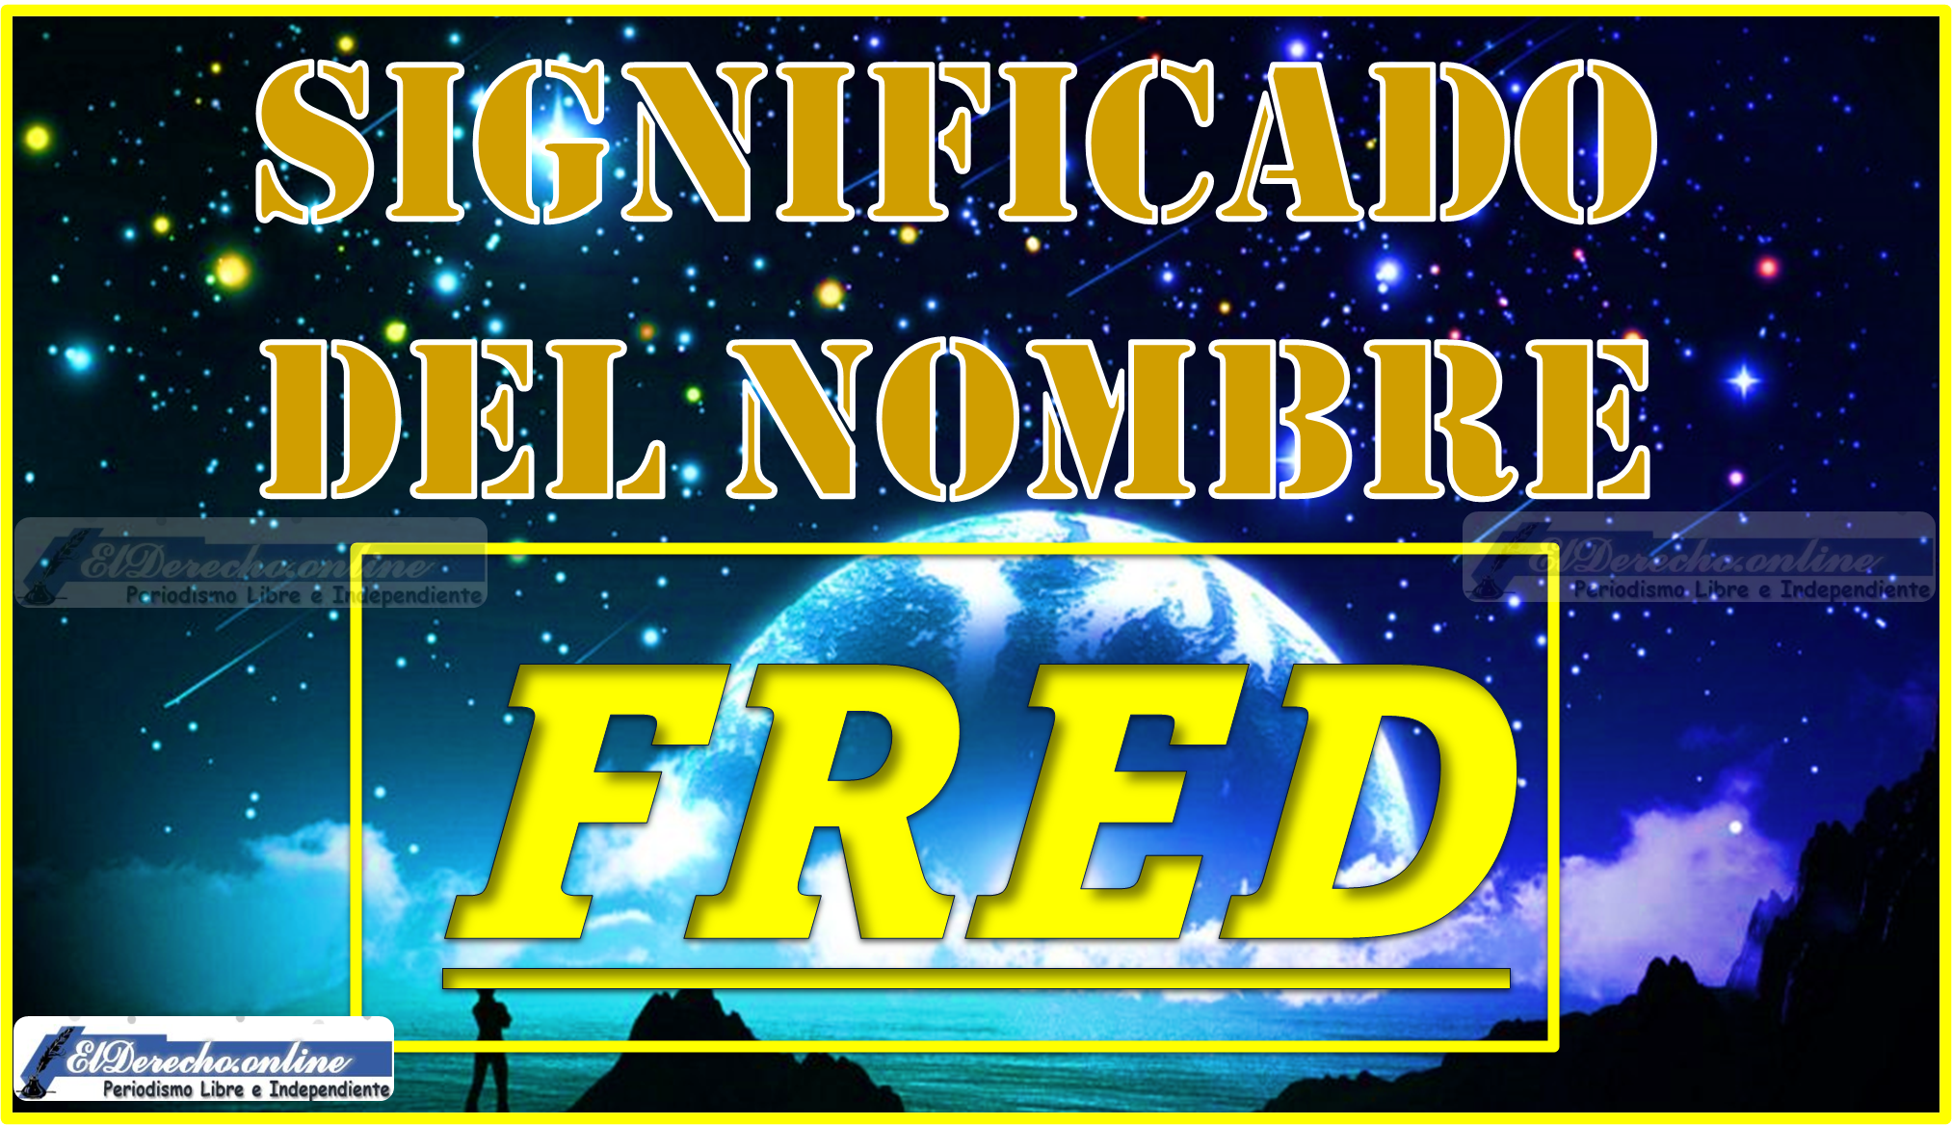 Significado del nombre Fred, su origen y más